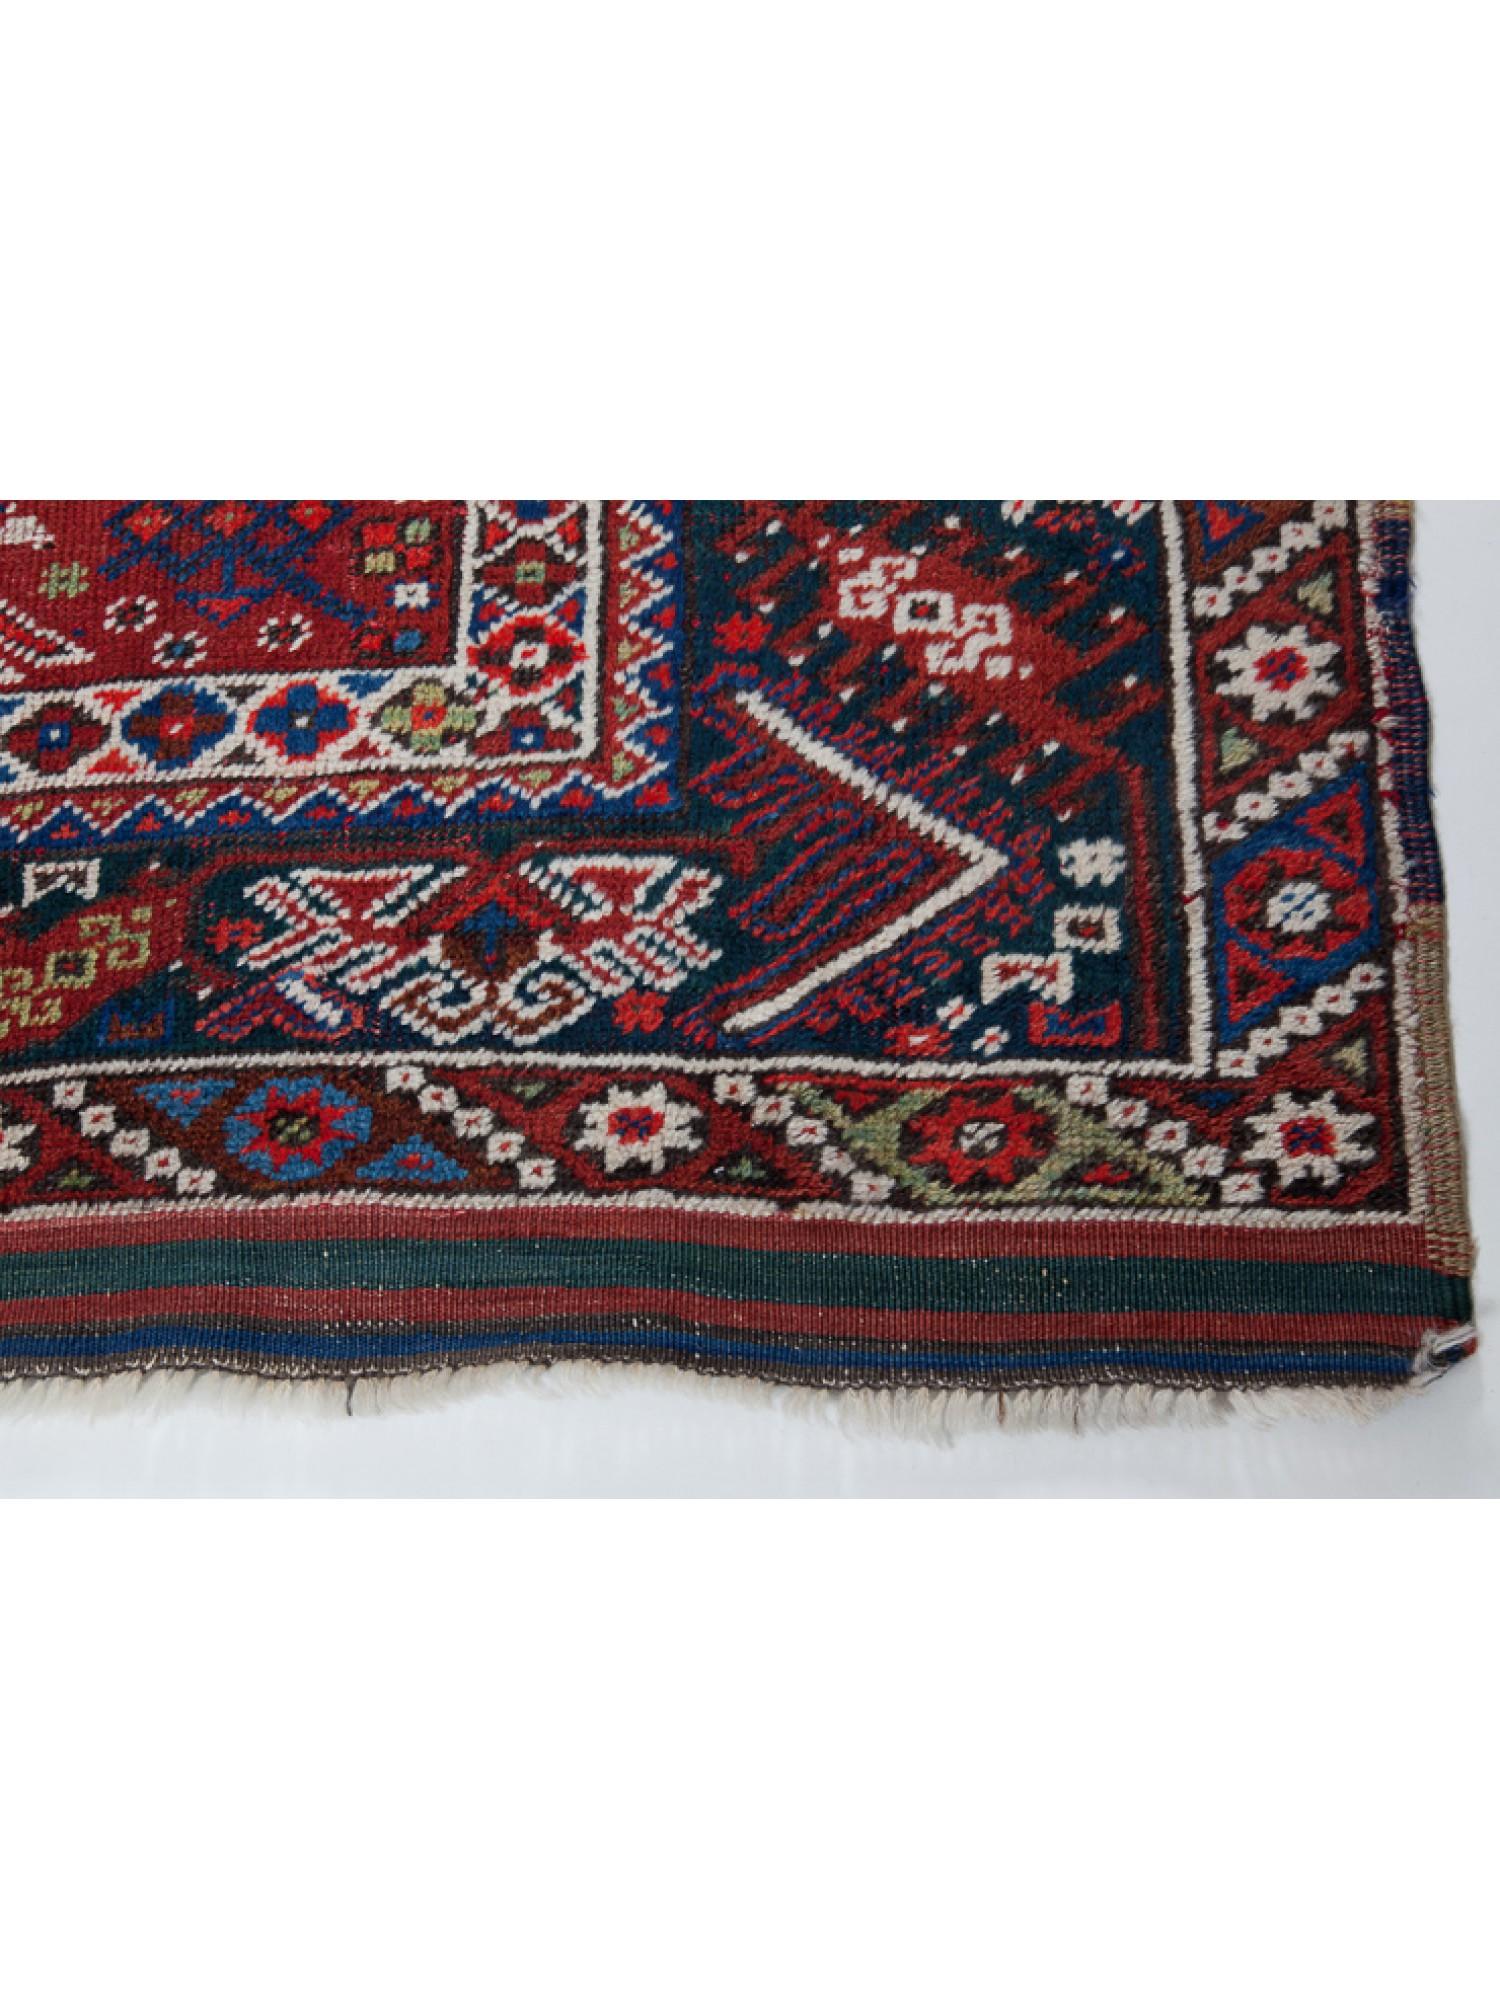 Es handelt sich um einen antiken Dosemealti-Teppich aus Südanatolien, Region Antalya, mit großer Bordüre, geometrischem Blumenmuster auf dem Grund, gutem Zustand und schöner Farbkomposition.

Antike Antalya-Teppiche, auch bekannt als Antalya-Kelims,